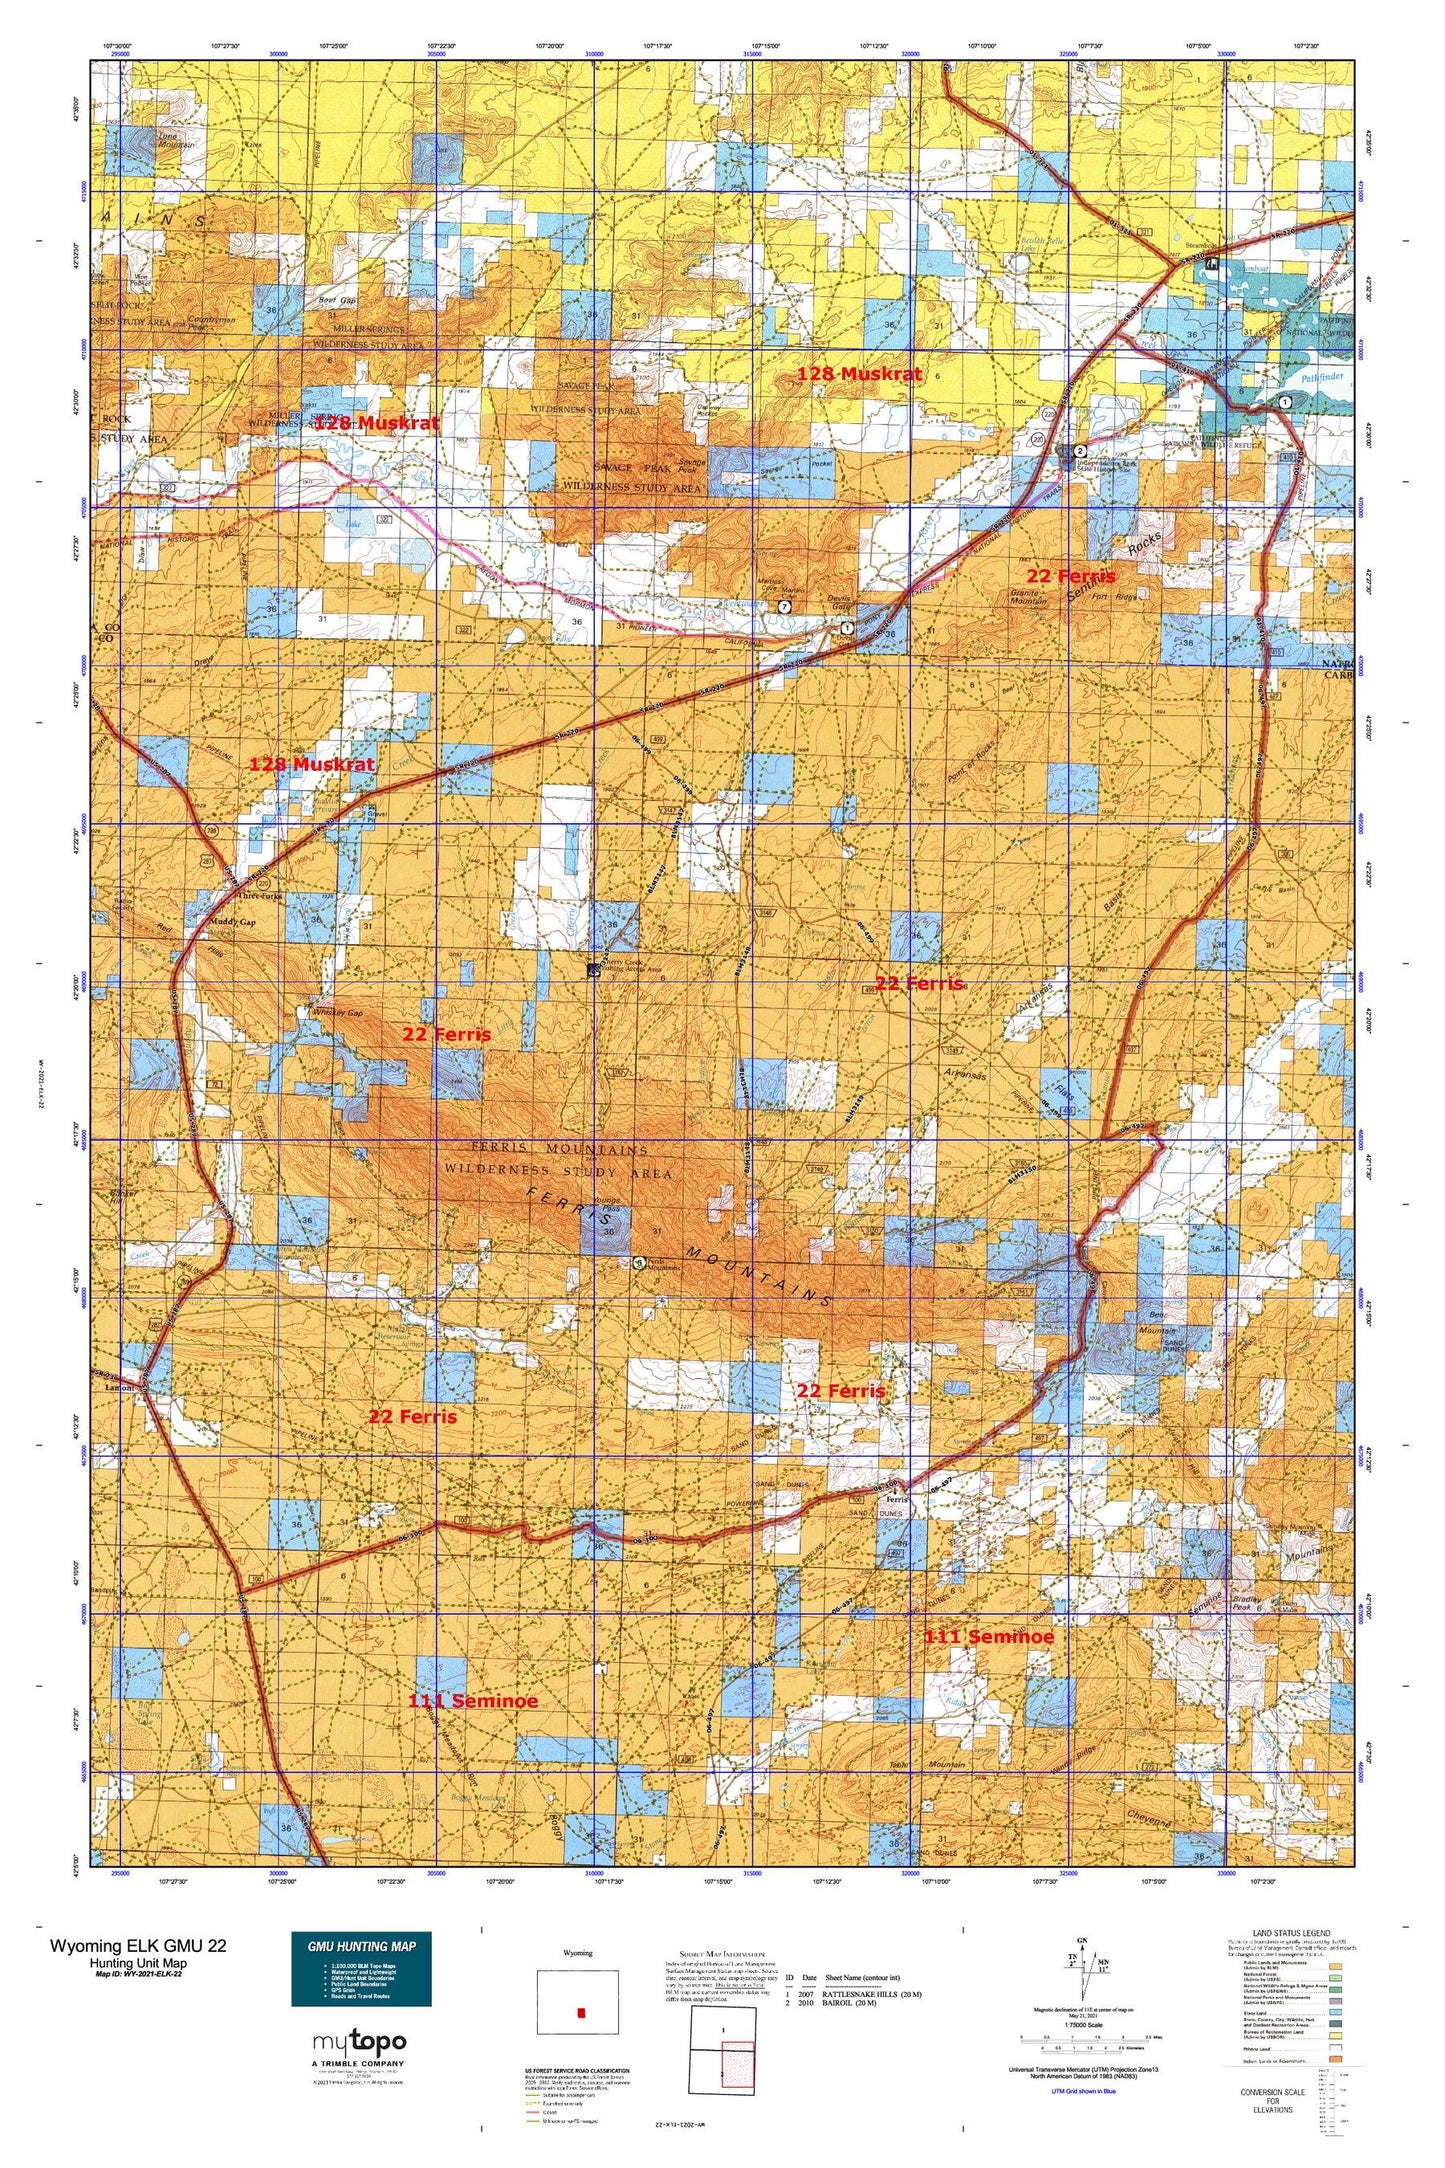 Wyoming Elk GMU 22 Map Image